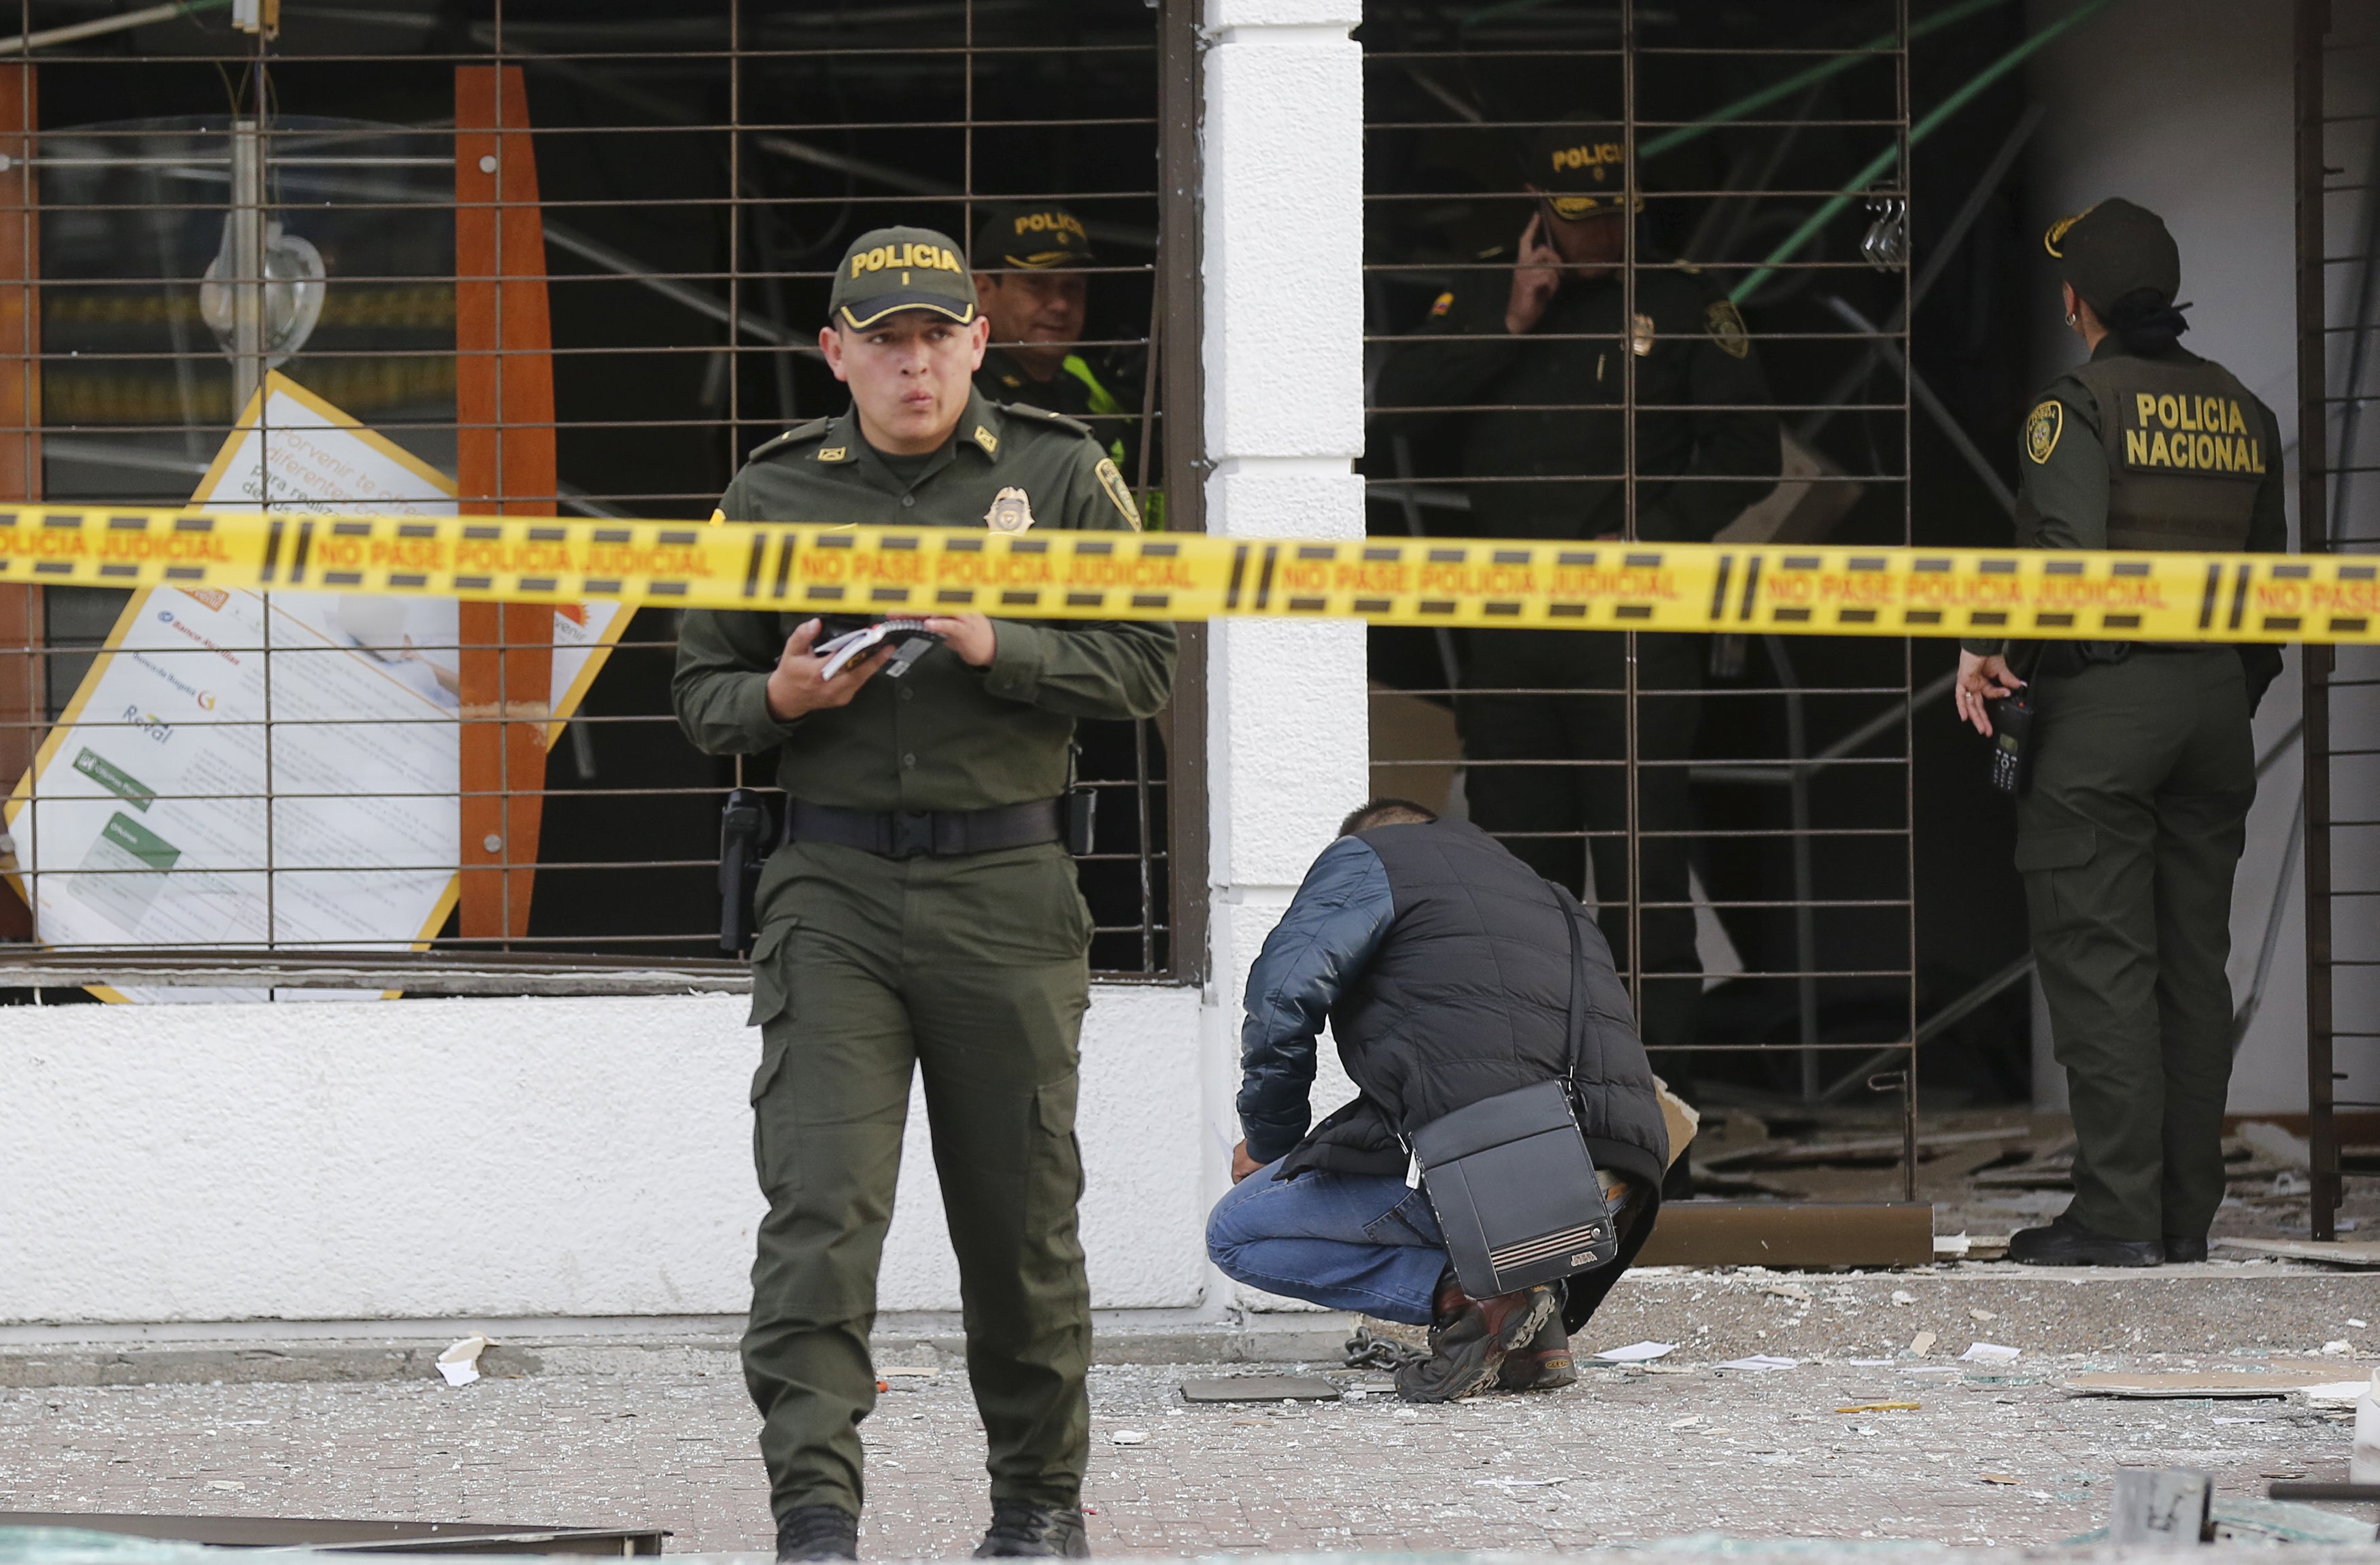 Atentado en Bogotá: Terrorista advirtió de casualidad “abandonen el edificio porque va a explotar”